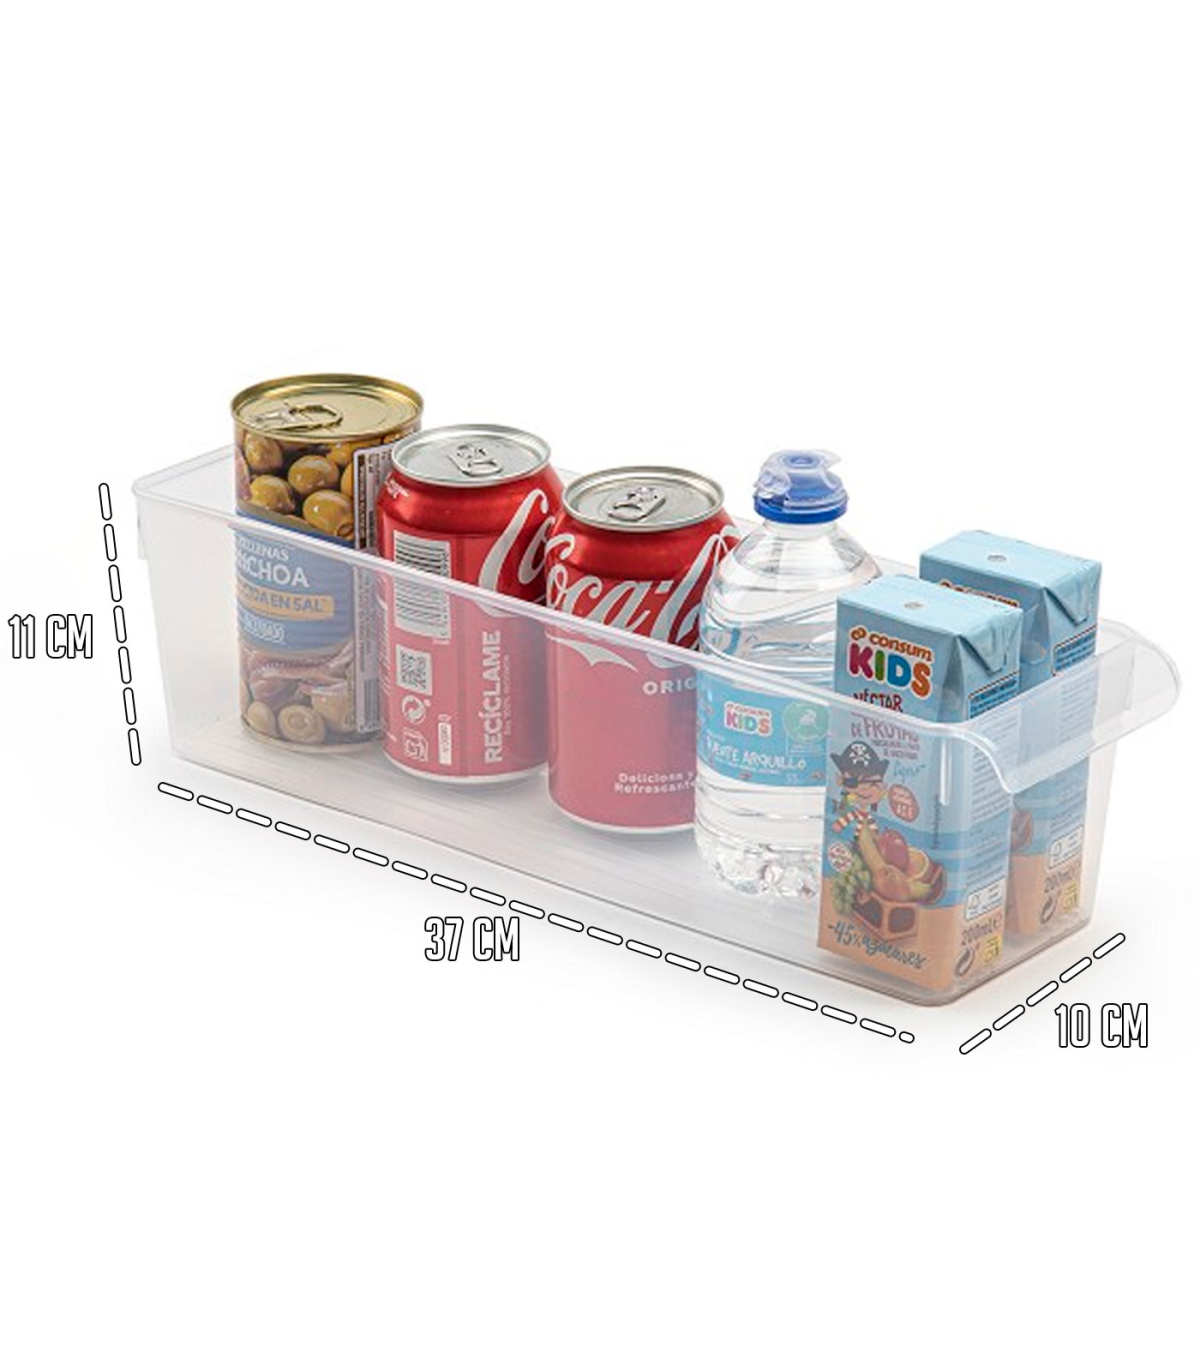 Tradineur - Cajón organizador reutilizable para frigorifico Nº 11 -  Fabricado en plástico - Recipiente de plástico transparente